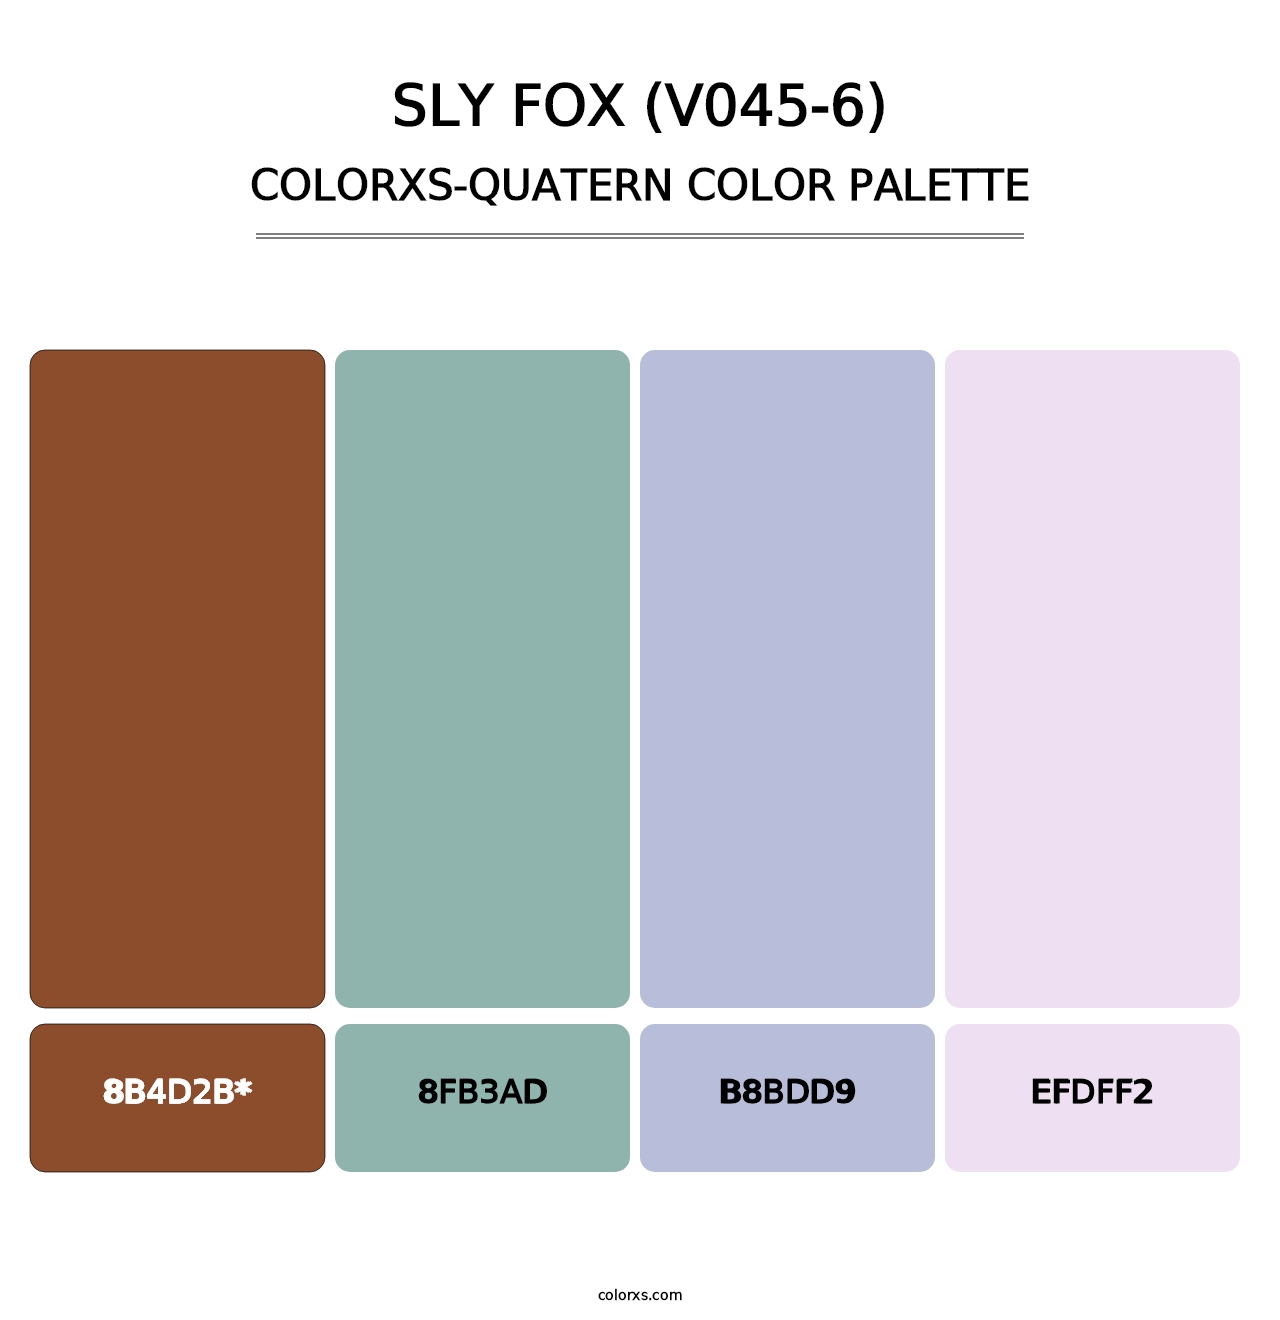 Sly Fox (V045-6) - Colorxs Quatern Palette